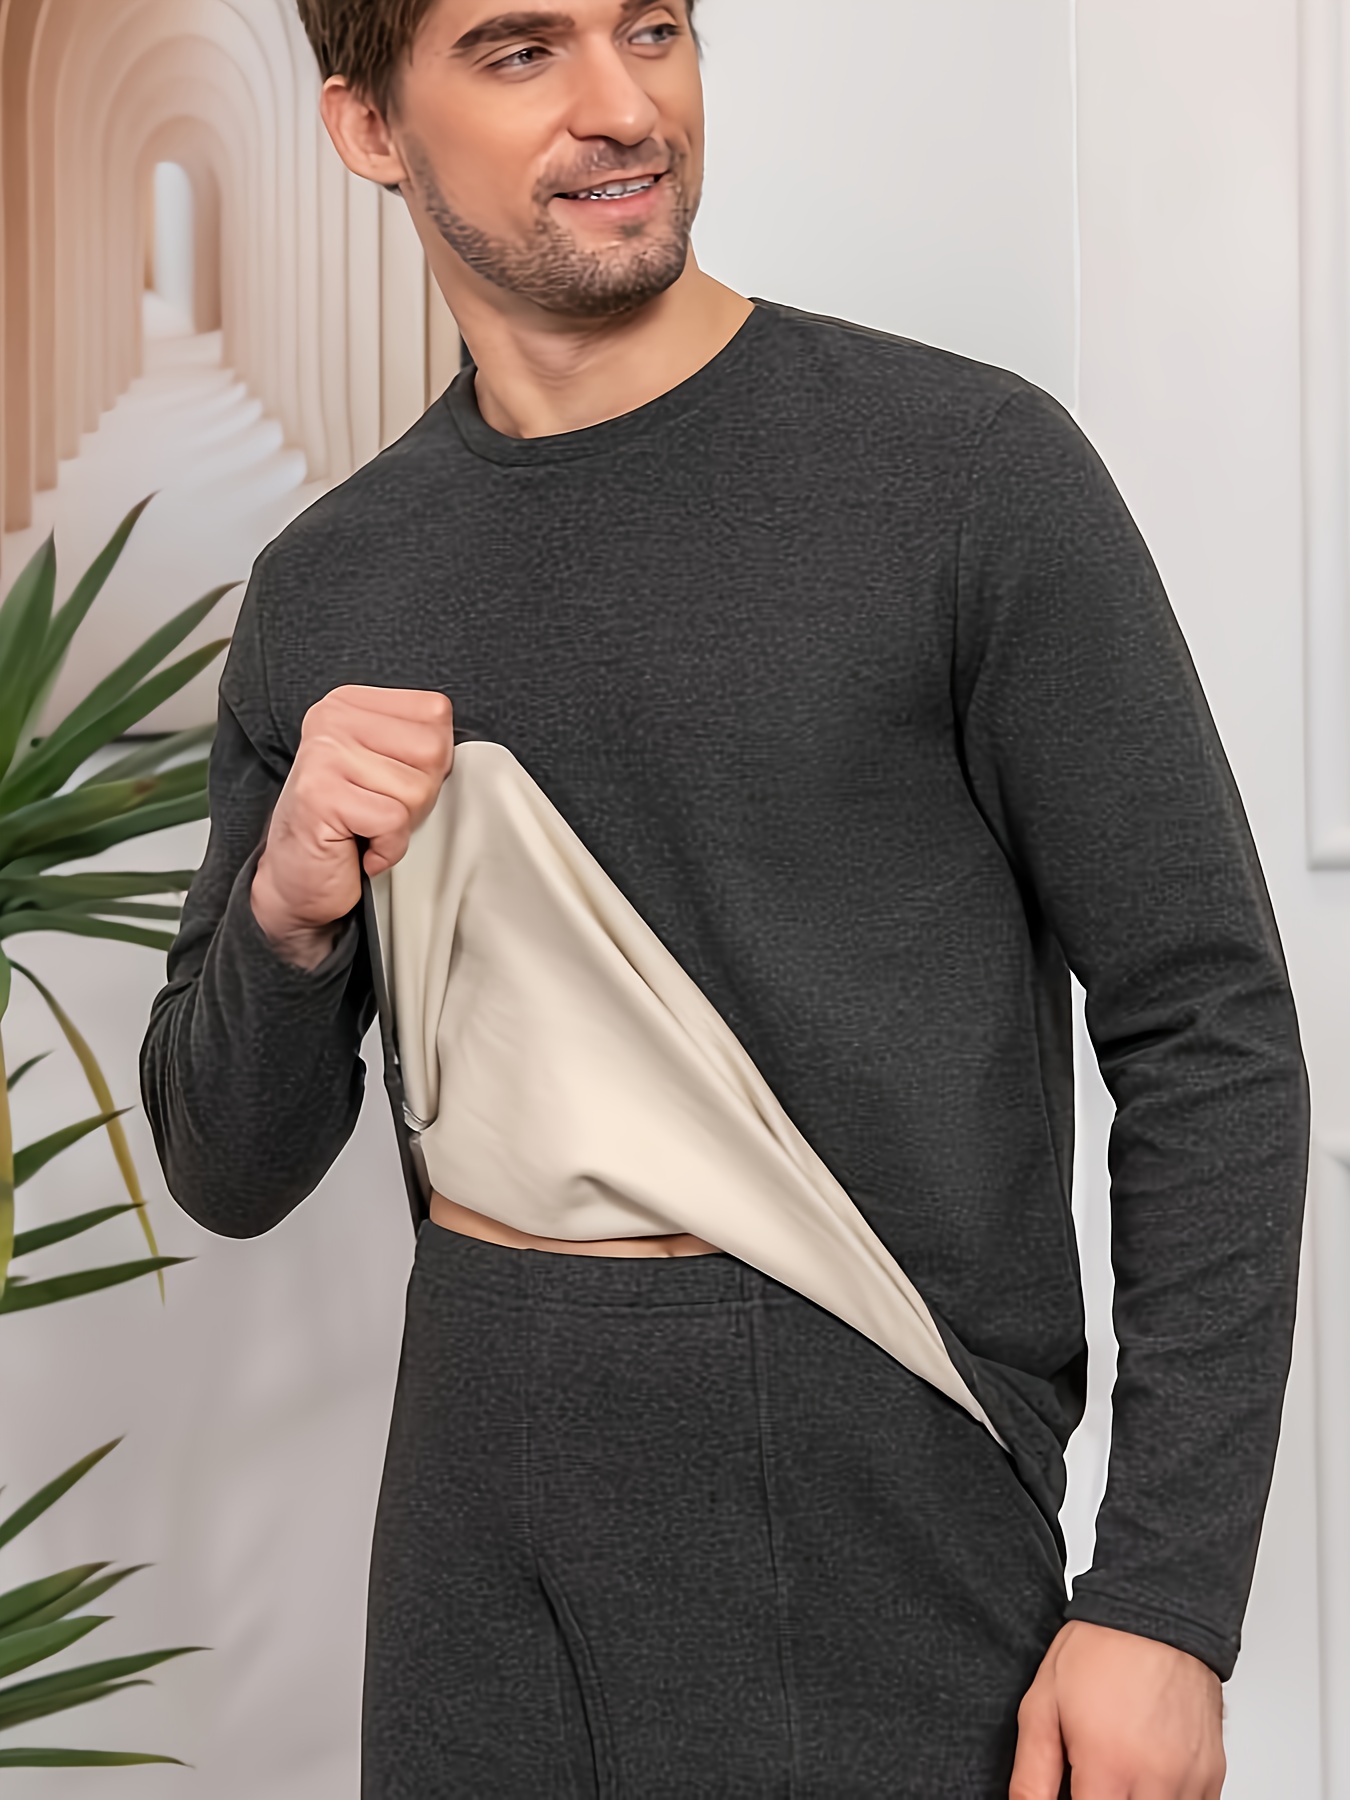 TSLA - Camisetas térmicas de compresión de manga larga para hombre, cuello  alto falso, para llevar como capa base en invierno, ideal para hacer